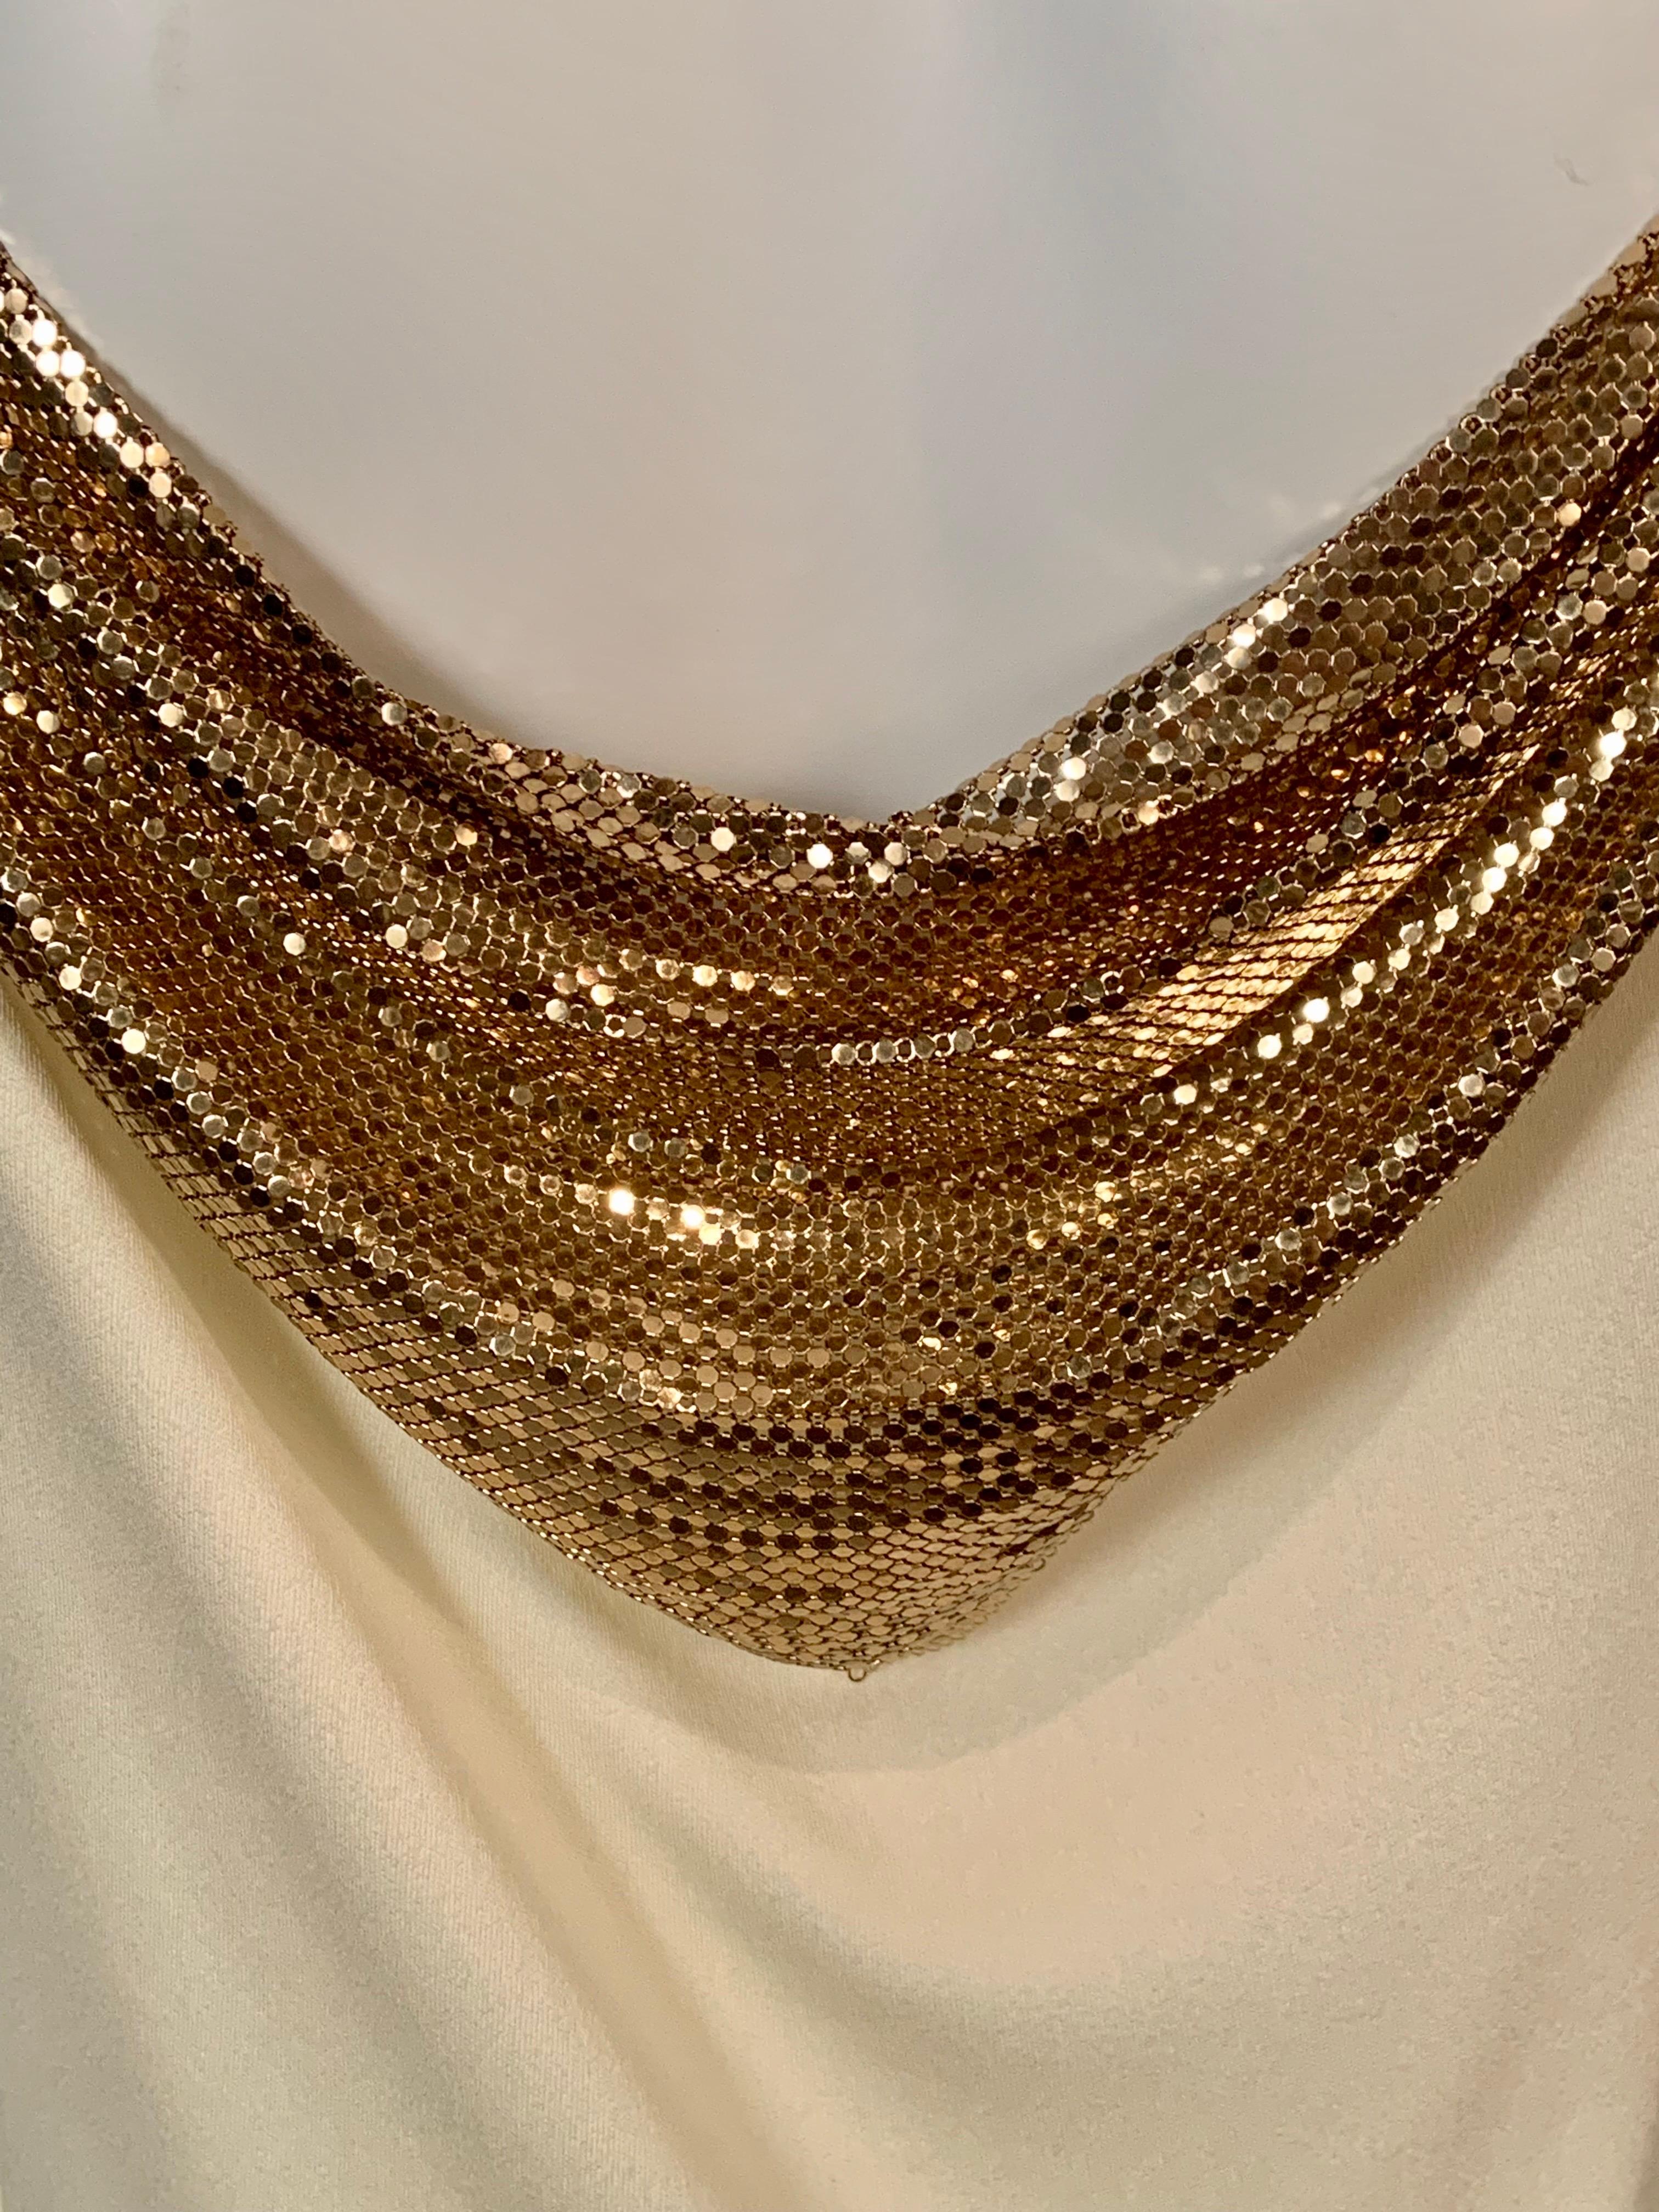 Whiting & Davis Gold Metal Mesh Embellished Cream Jersey Dress 6